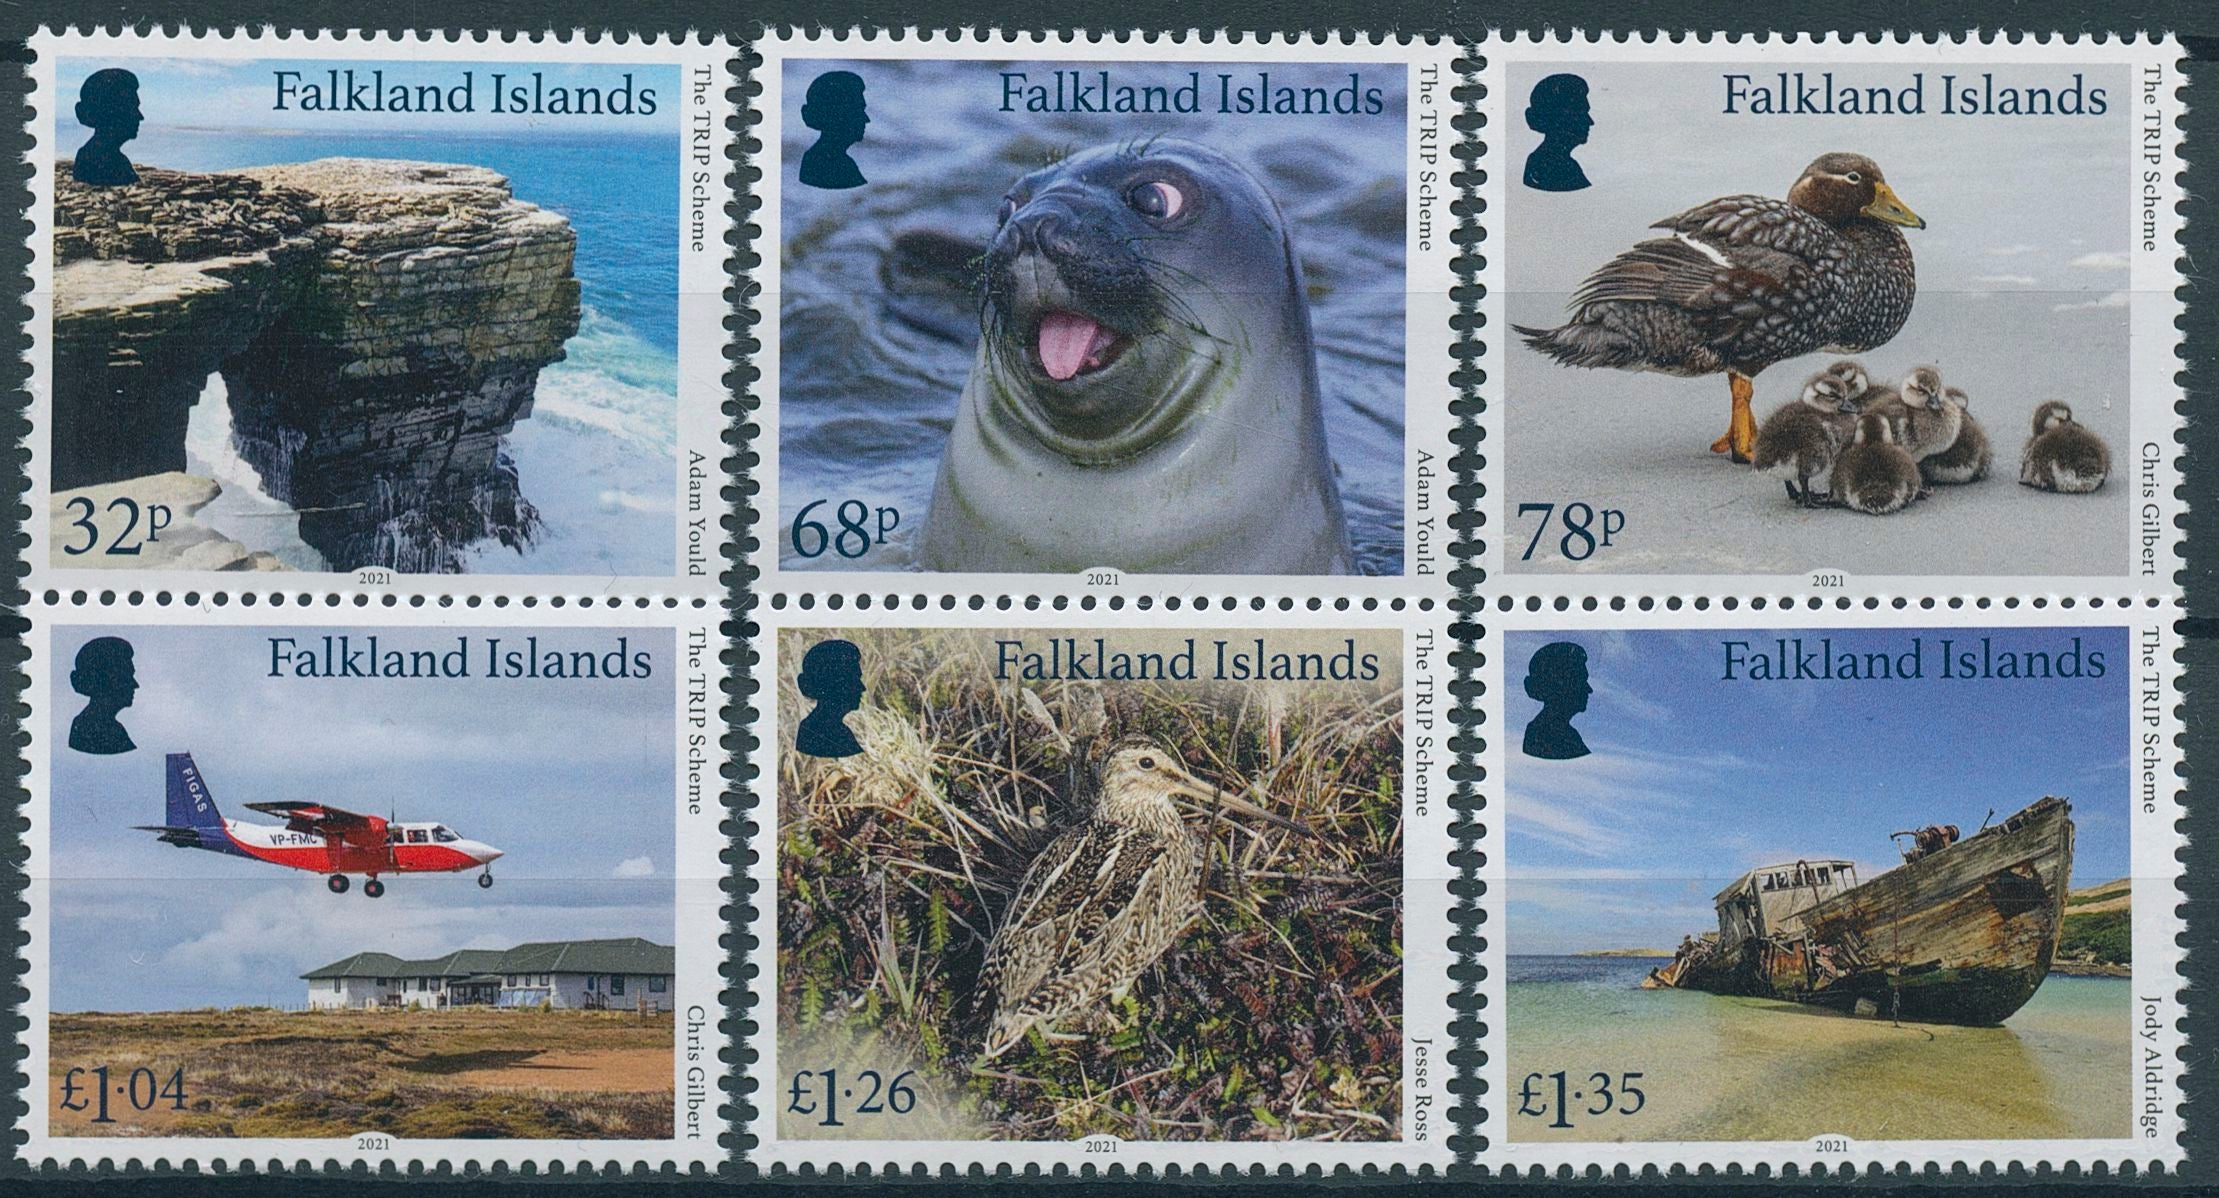 Falkland Islands 2021 MNH Birds on Stamps TRIP Scheme Aviation Landscapes Ducks 6v Set